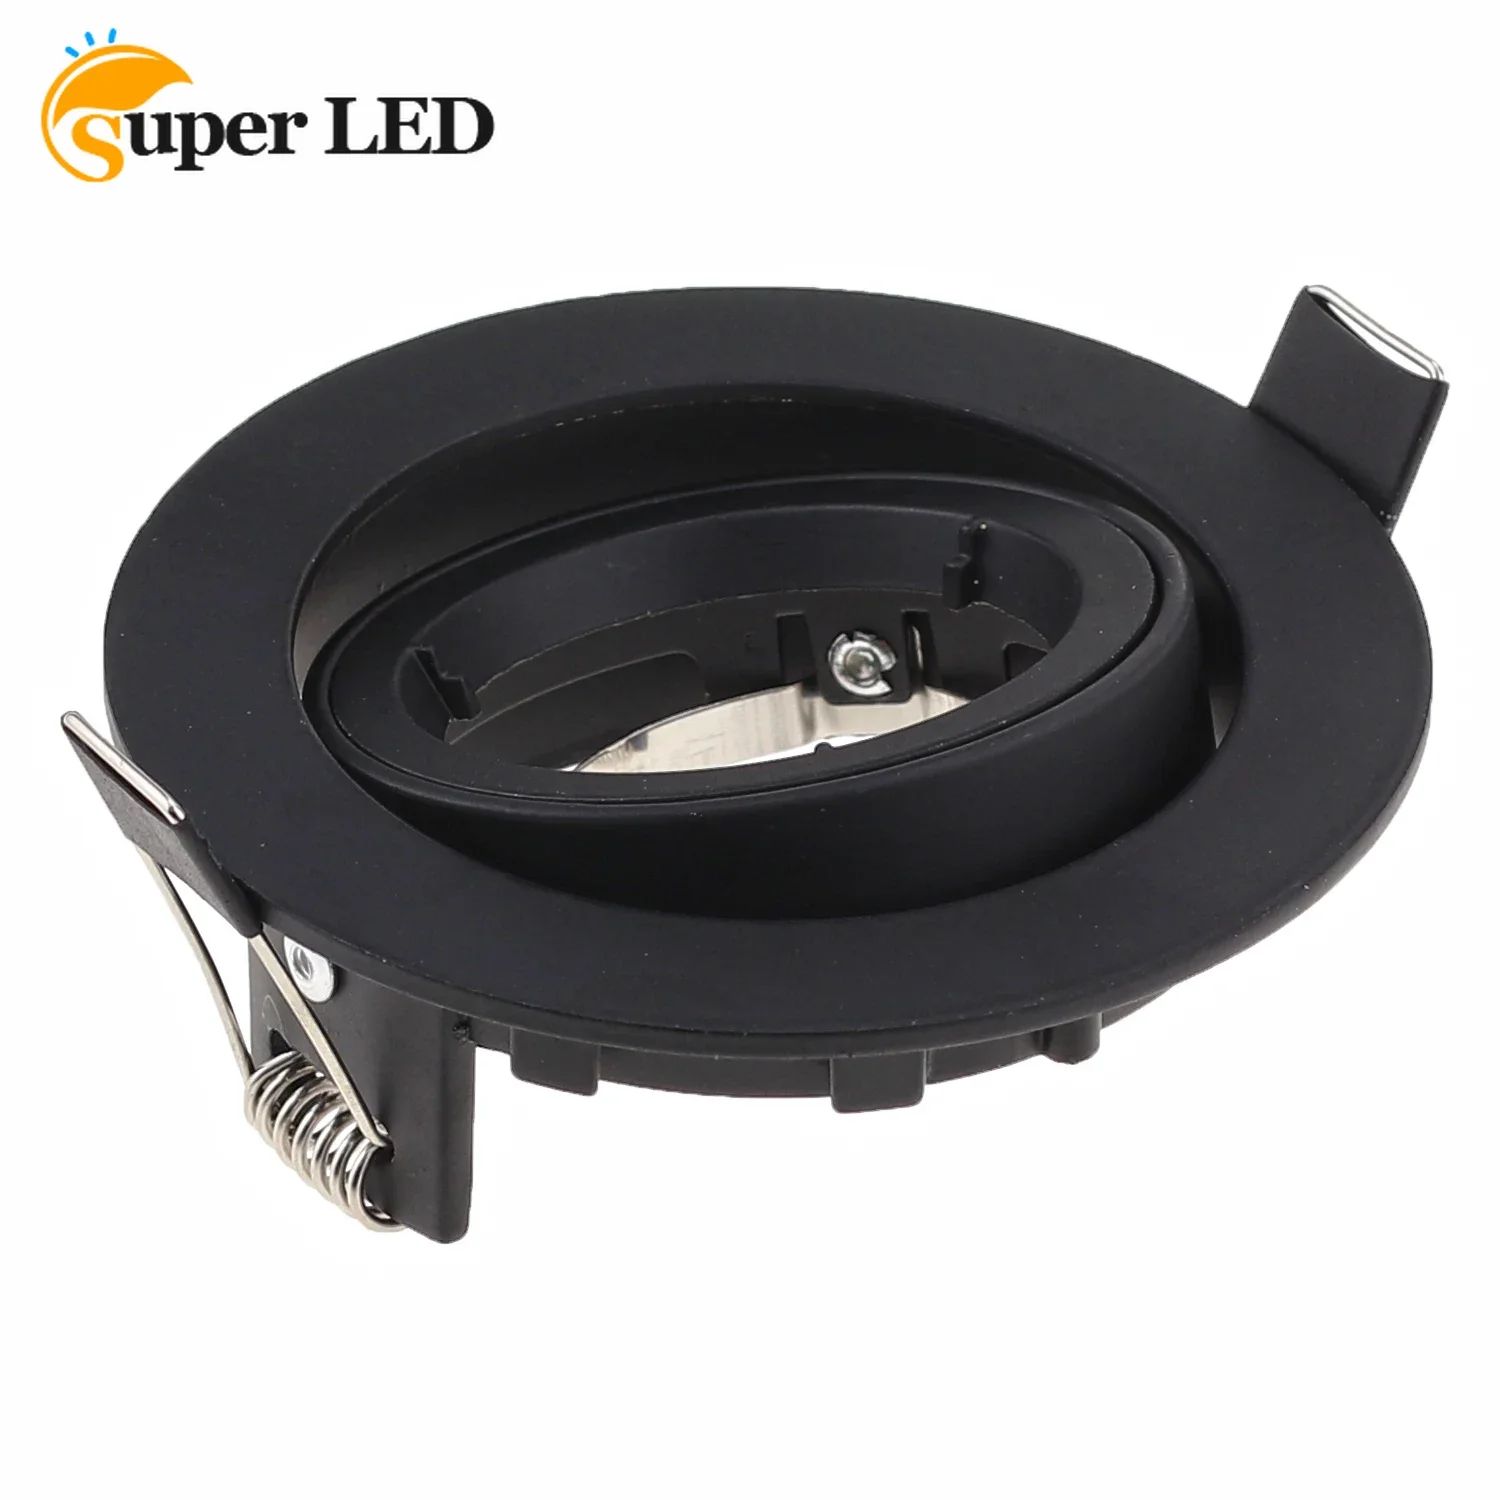 

Single Head LED Eyeball Casing Fixture GU10 MR16 Black White Downlight LED Spotlight Casing Fitting Frame